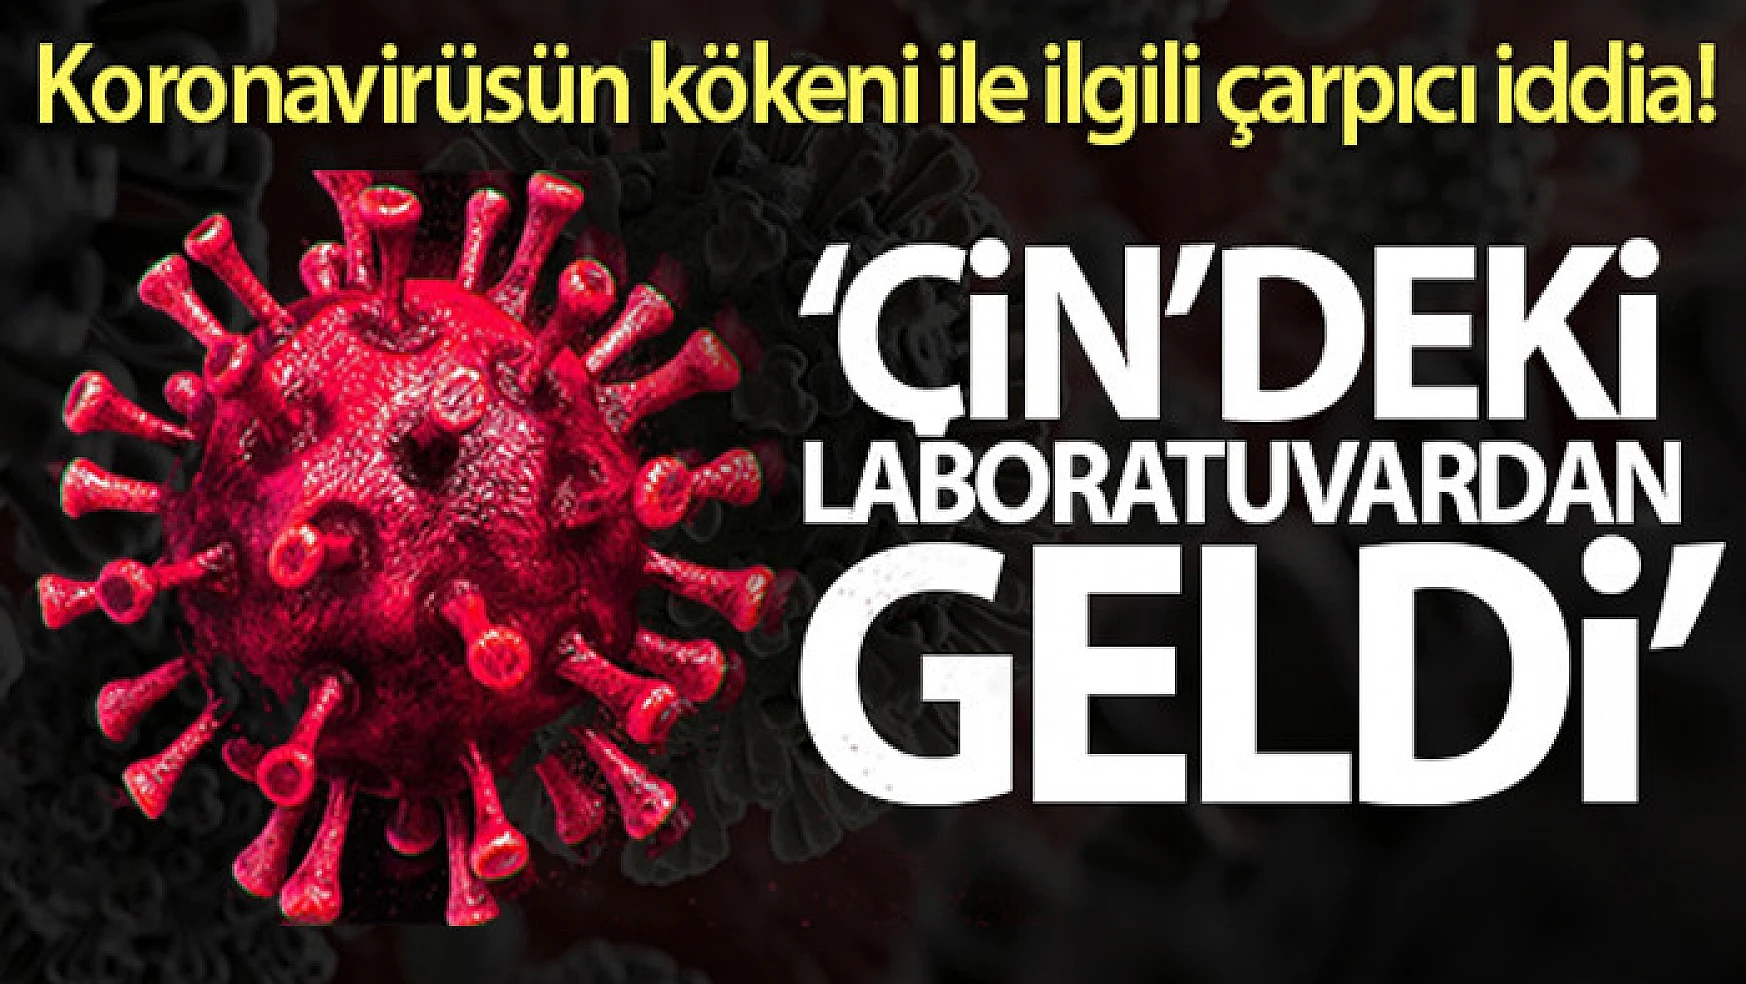 Eski CDC Başkanı Redfield: 'Korona virüs Çin'deki laboratuvardan geldi'